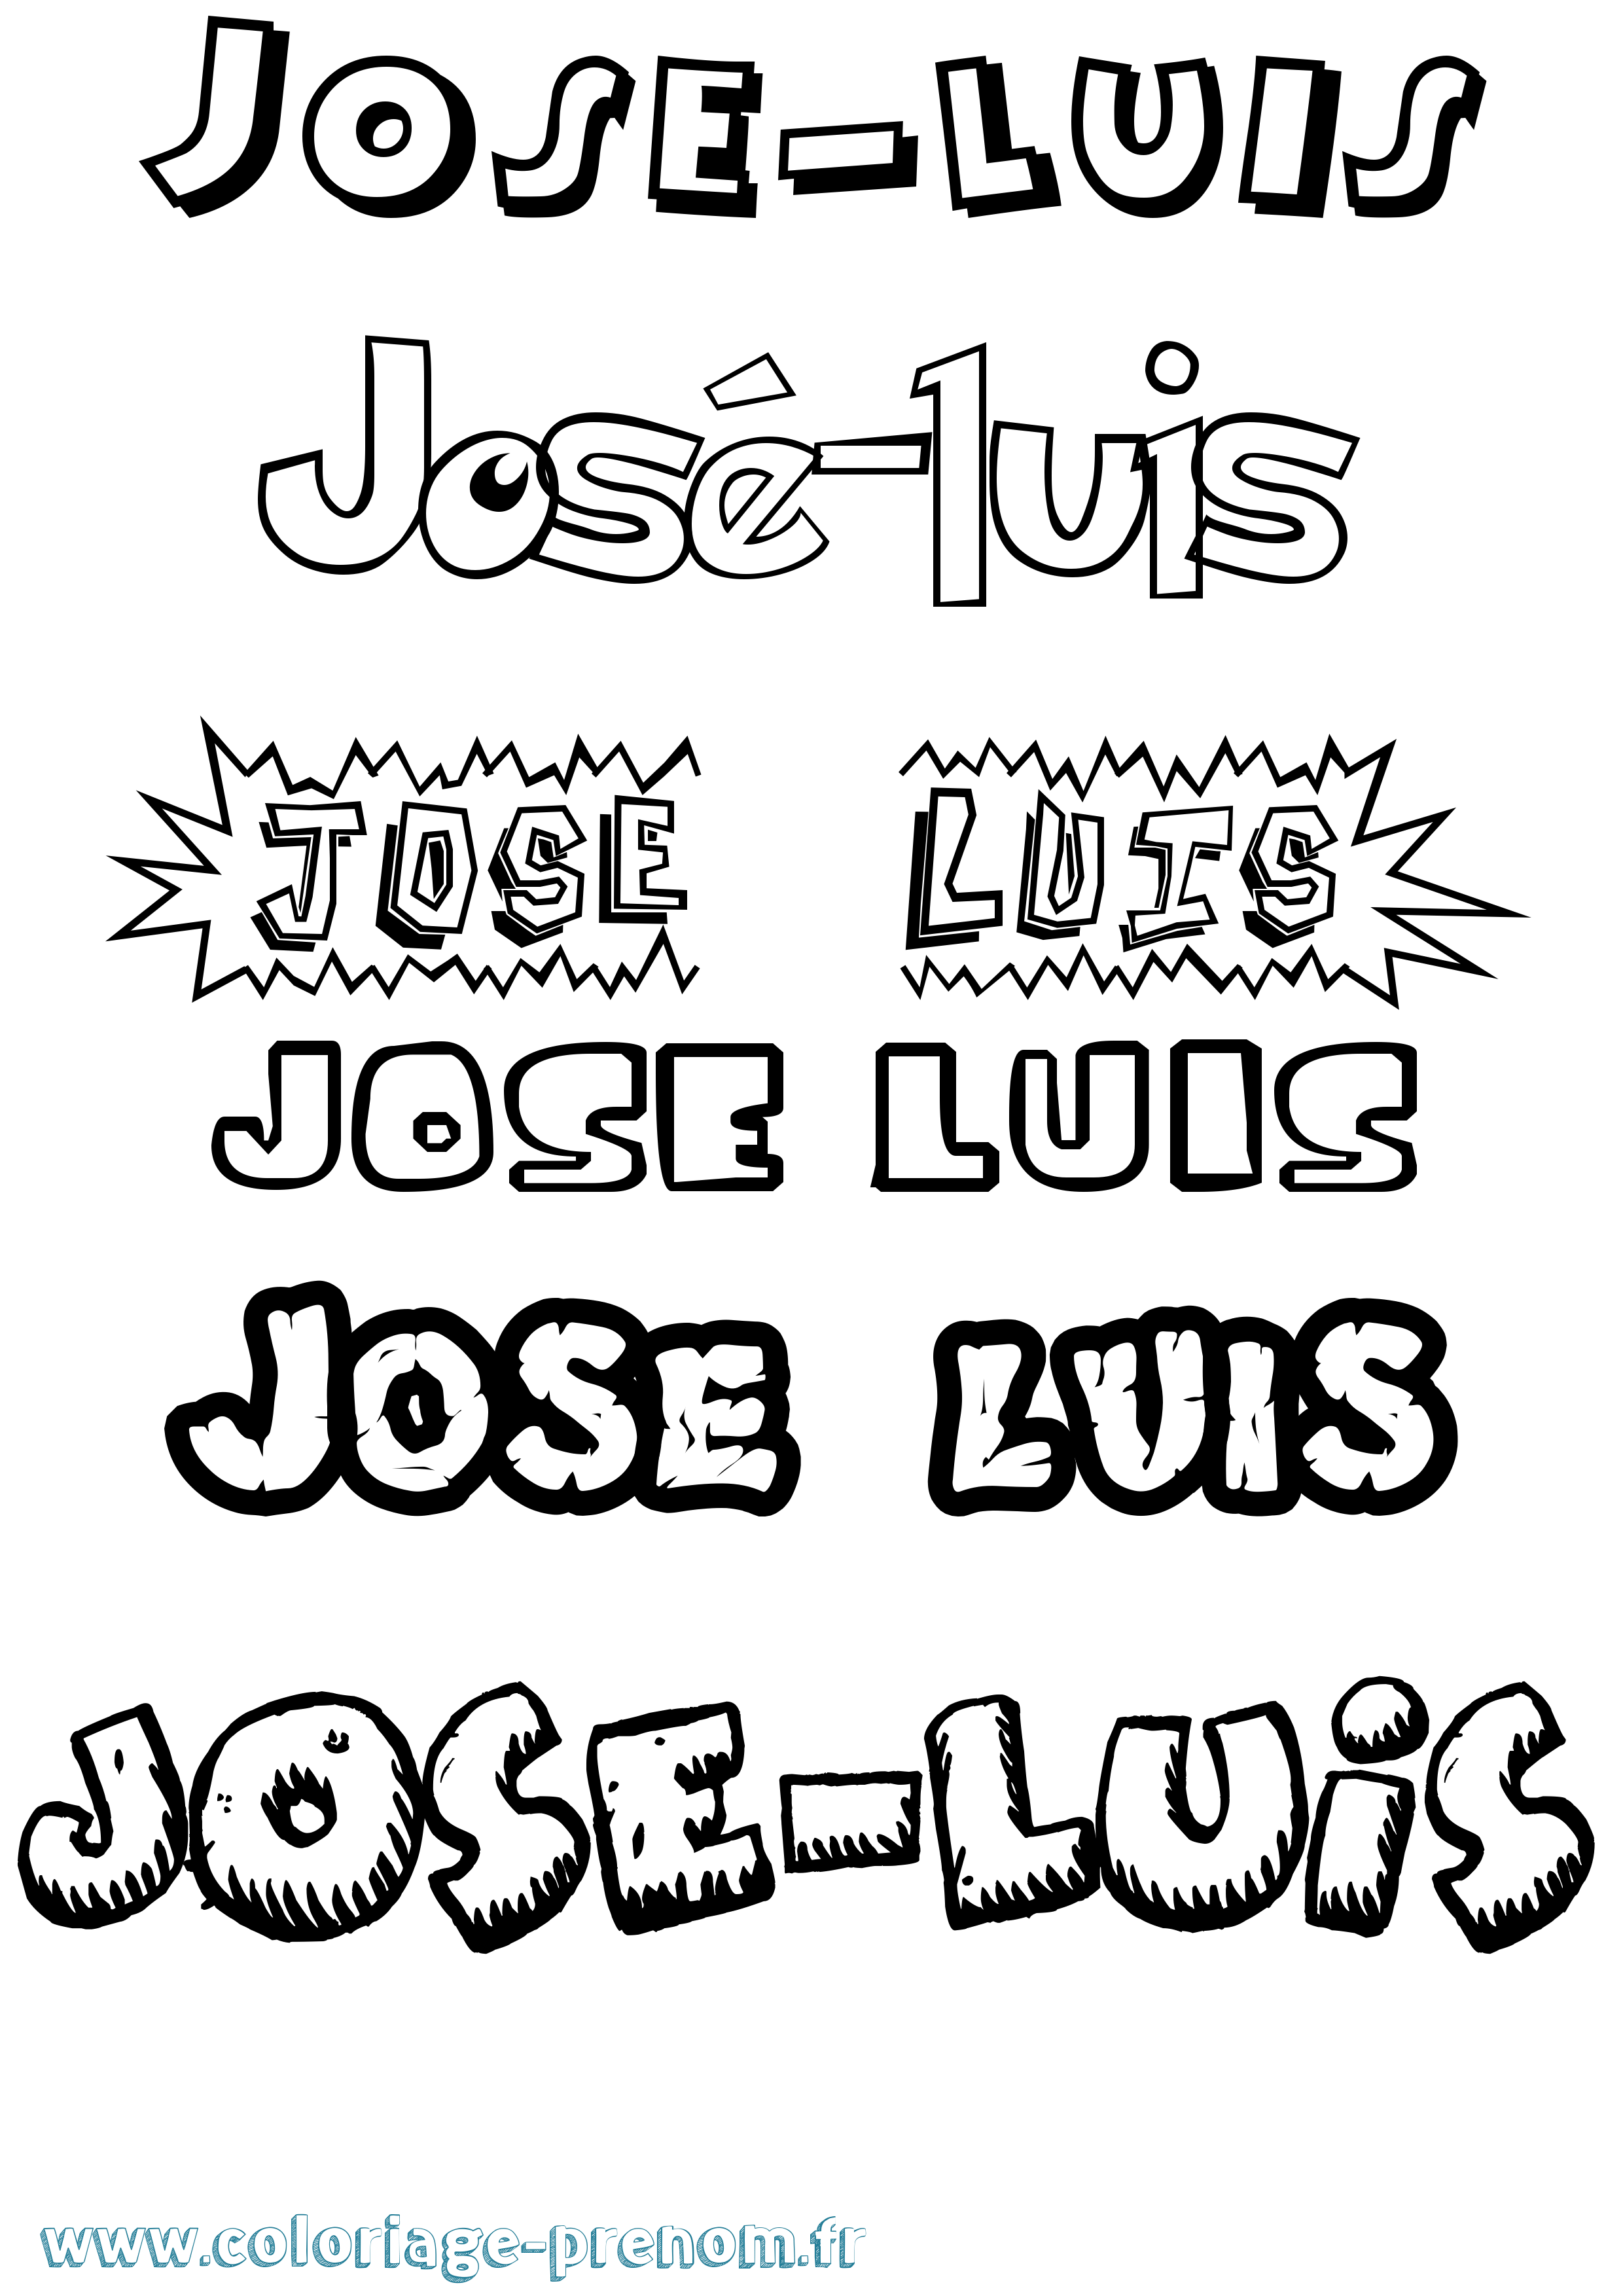 Coloriage prénom José-Luis Dessin Animé